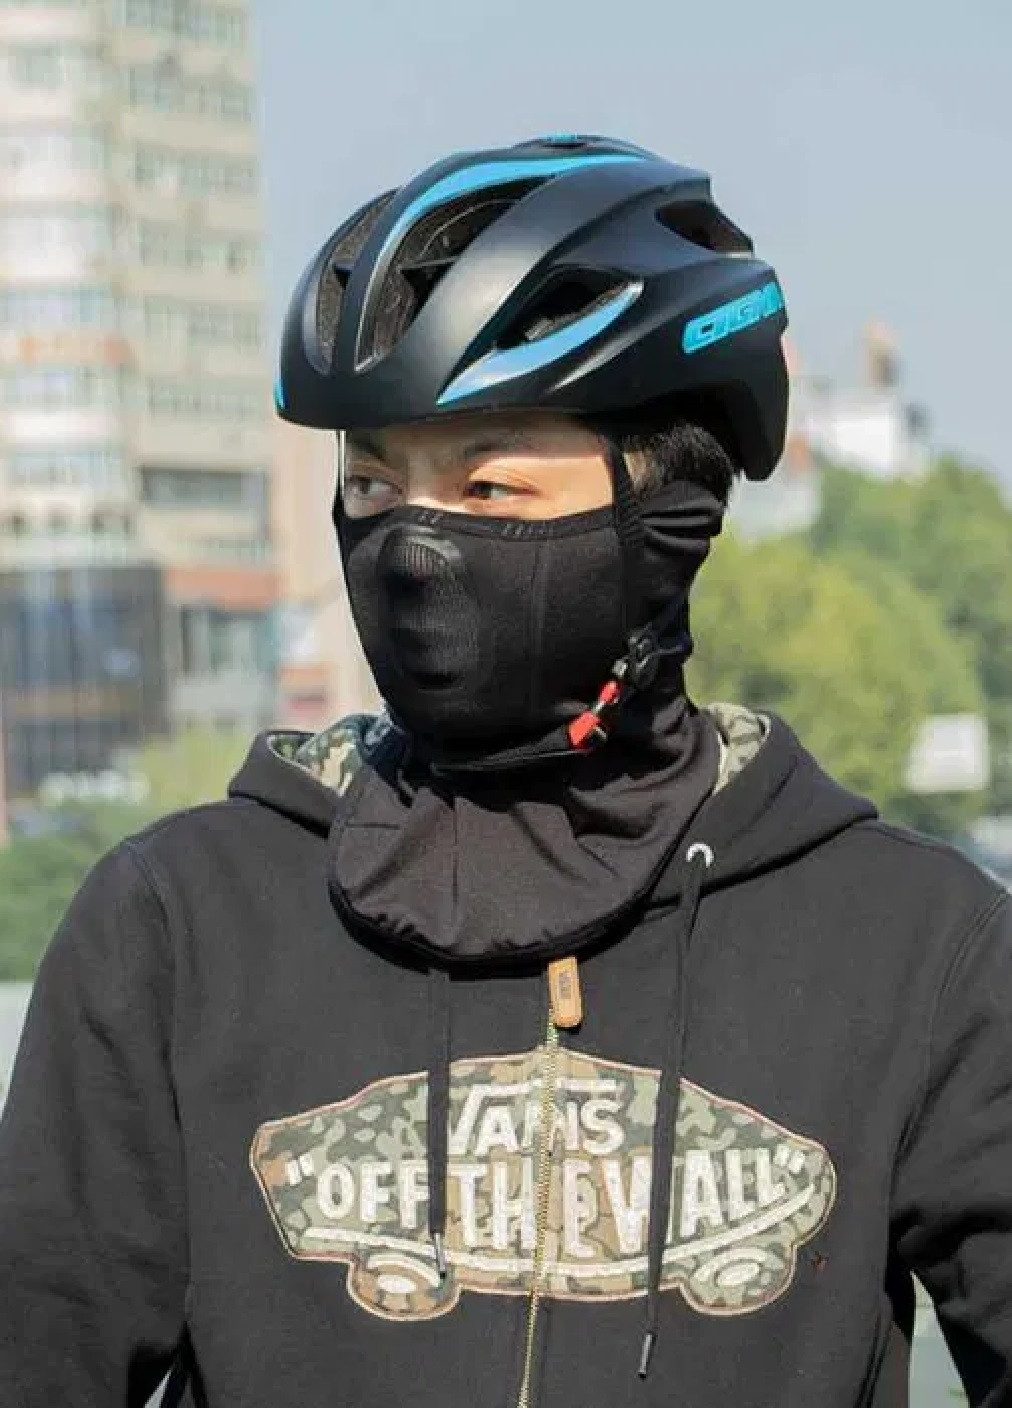 Unbranded термо маска балаклава зимний бафф шарф подшлемник лыжная шапка ветрозащитная (473568-prob) черная однотонный черный спортивный производство -